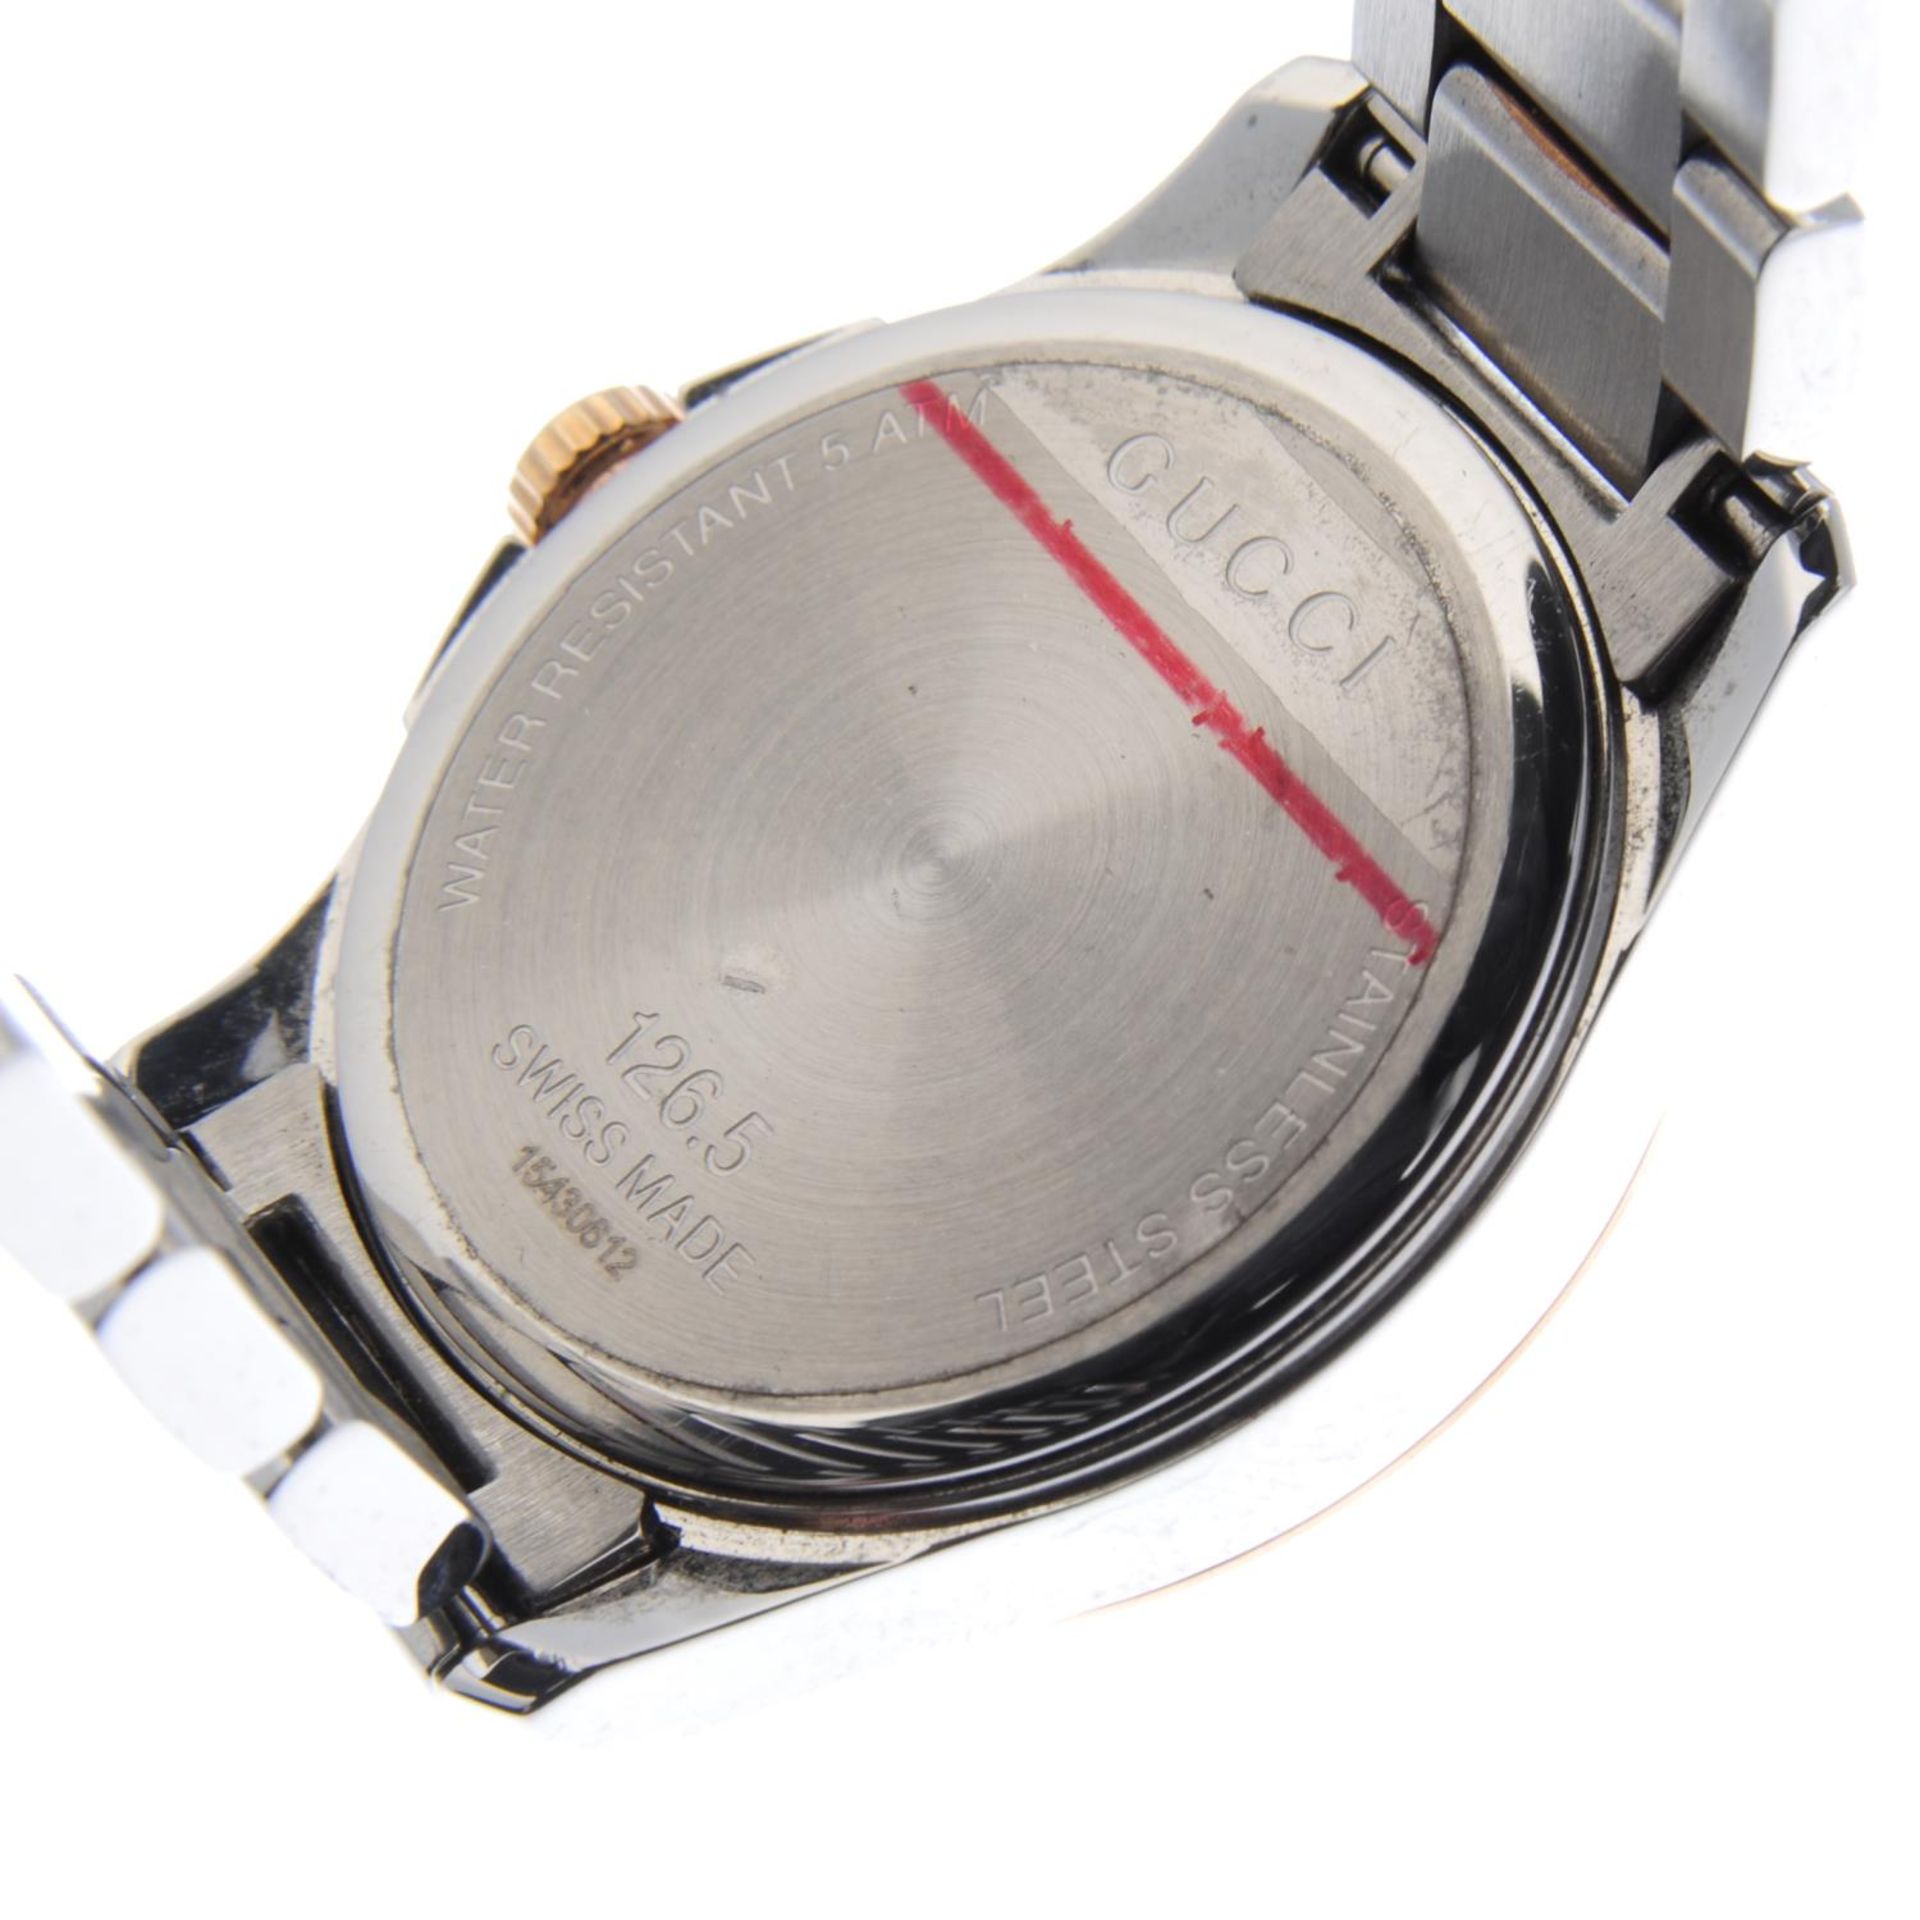 GUCCI - a lady's G-Timeless bracelet watch. - Image 4 of 4